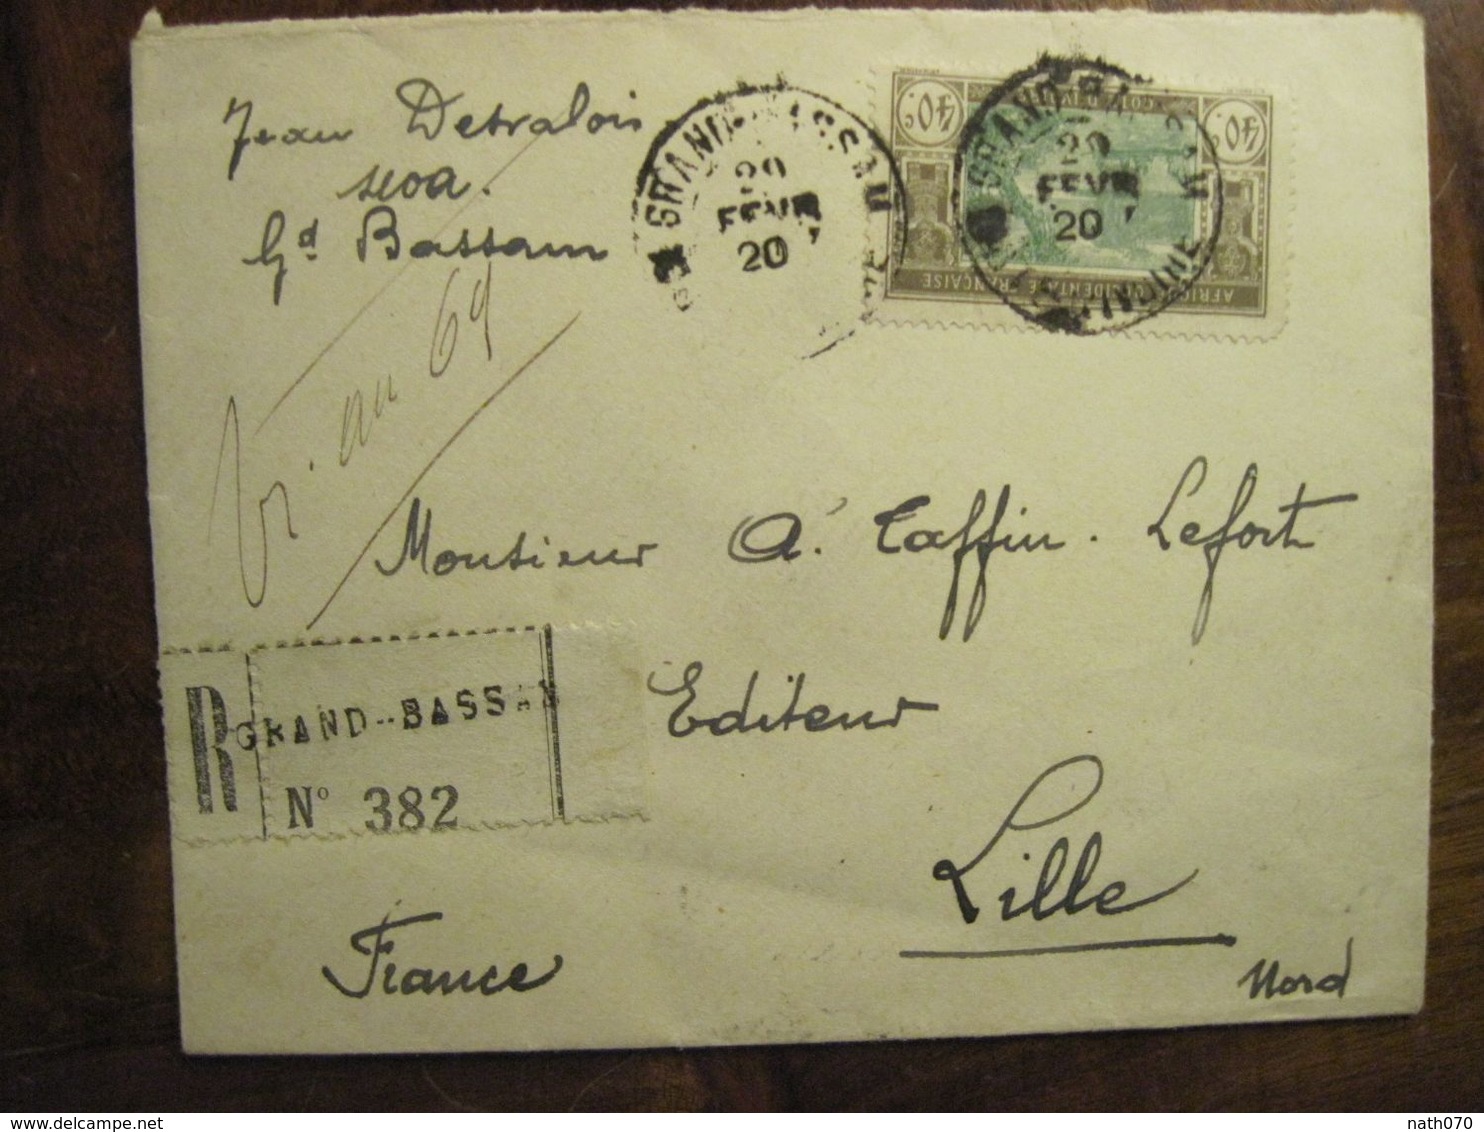 Cote D'Ivoire 1920 France Grand Bassam Lettre Enveloppe Cover Colonie Recommandé Reco AOF Taffin Lefort - Covers & Documents